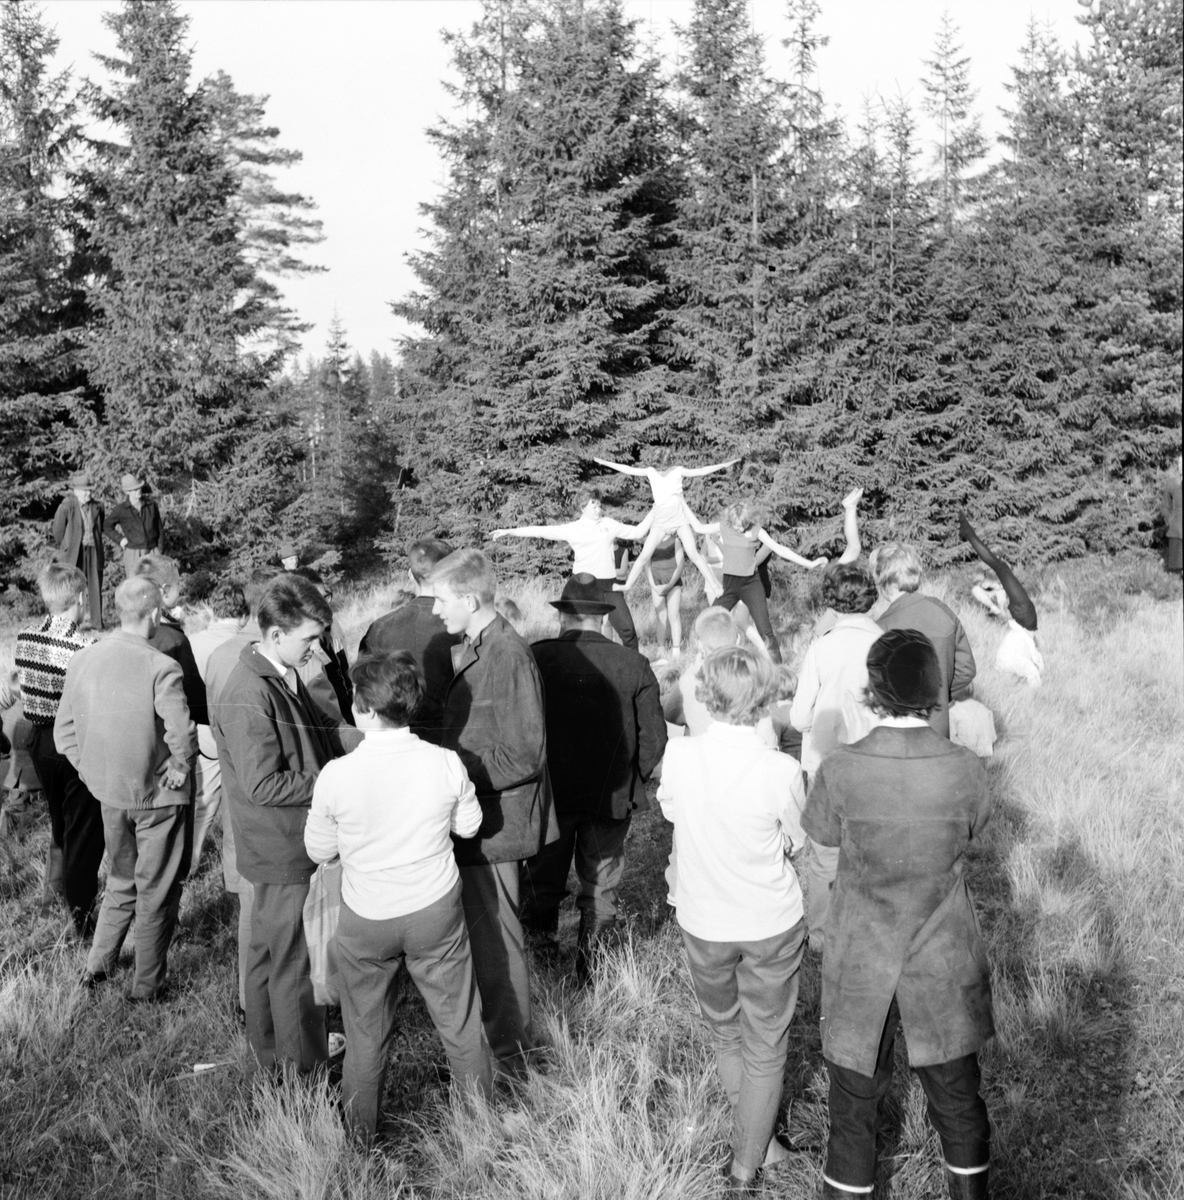 Alfta frisksportklubbs invigning av Malvikstugan.
6/10-1962